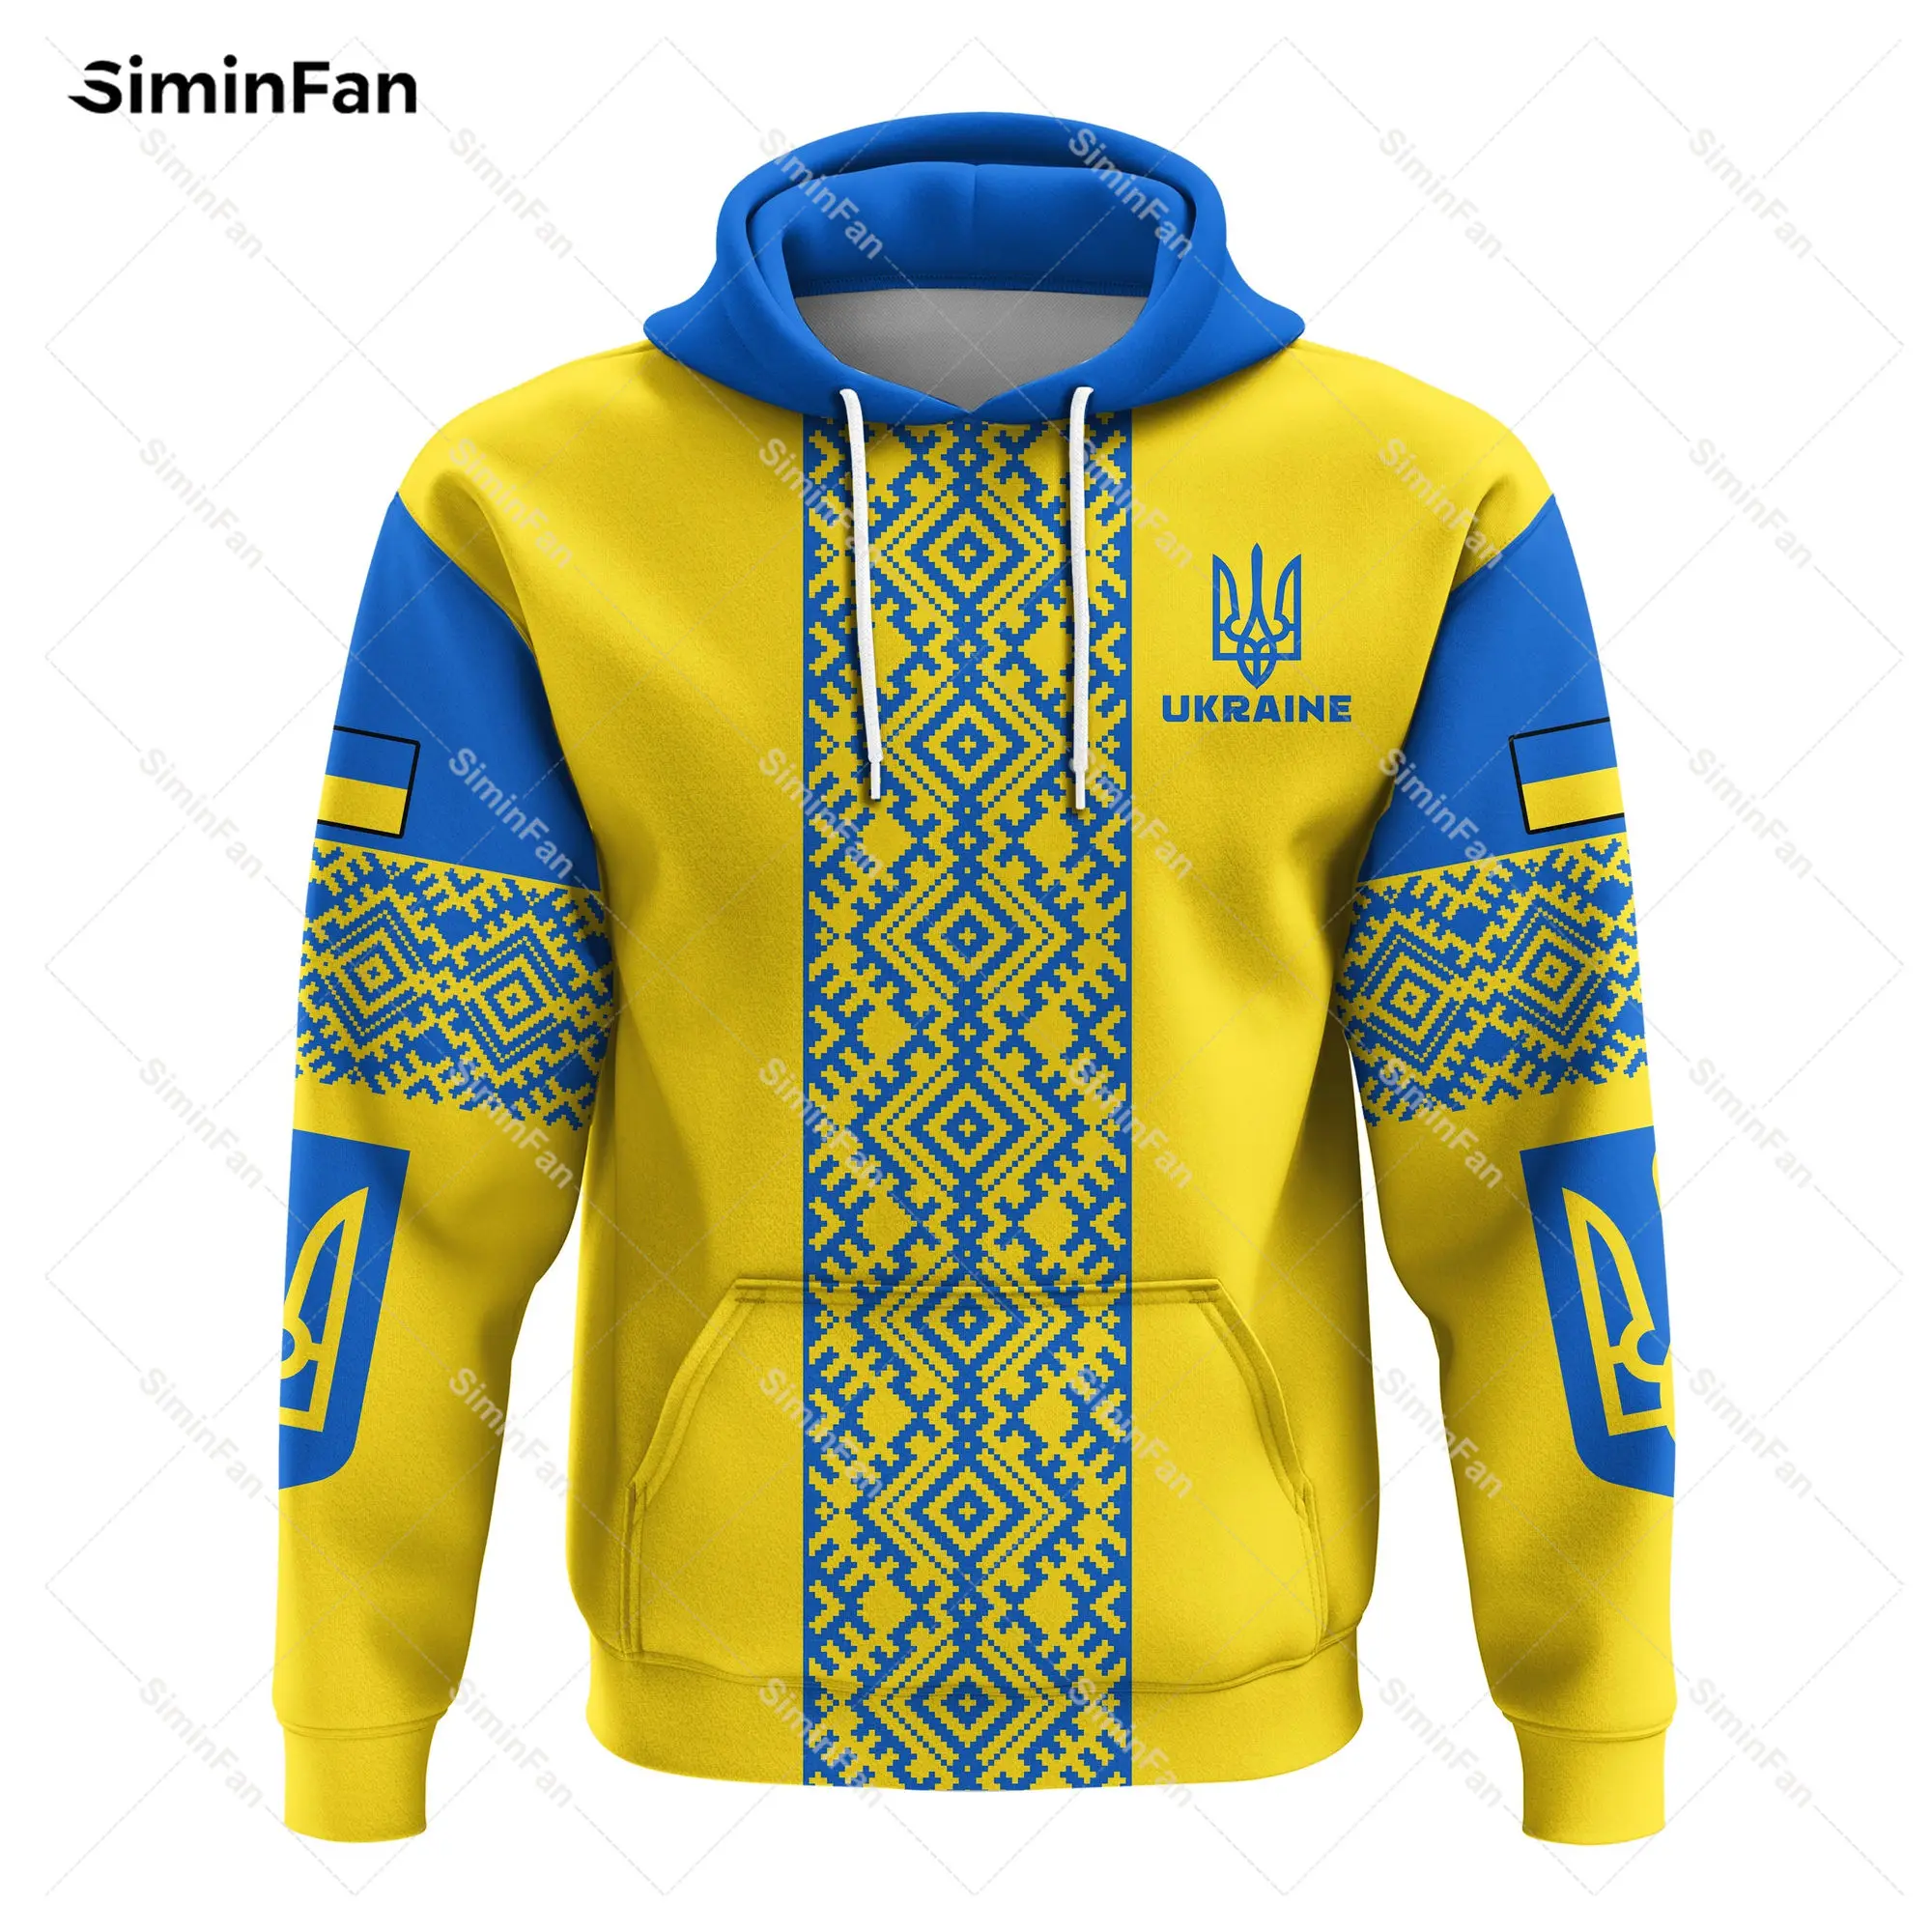 

Ukraine Ukrainian Pattern 3D Printed Hoodie Zipper Jacket Mens Pullover Hoody Jumper Coat Unisex Outwear Sweatshirt Female Tops